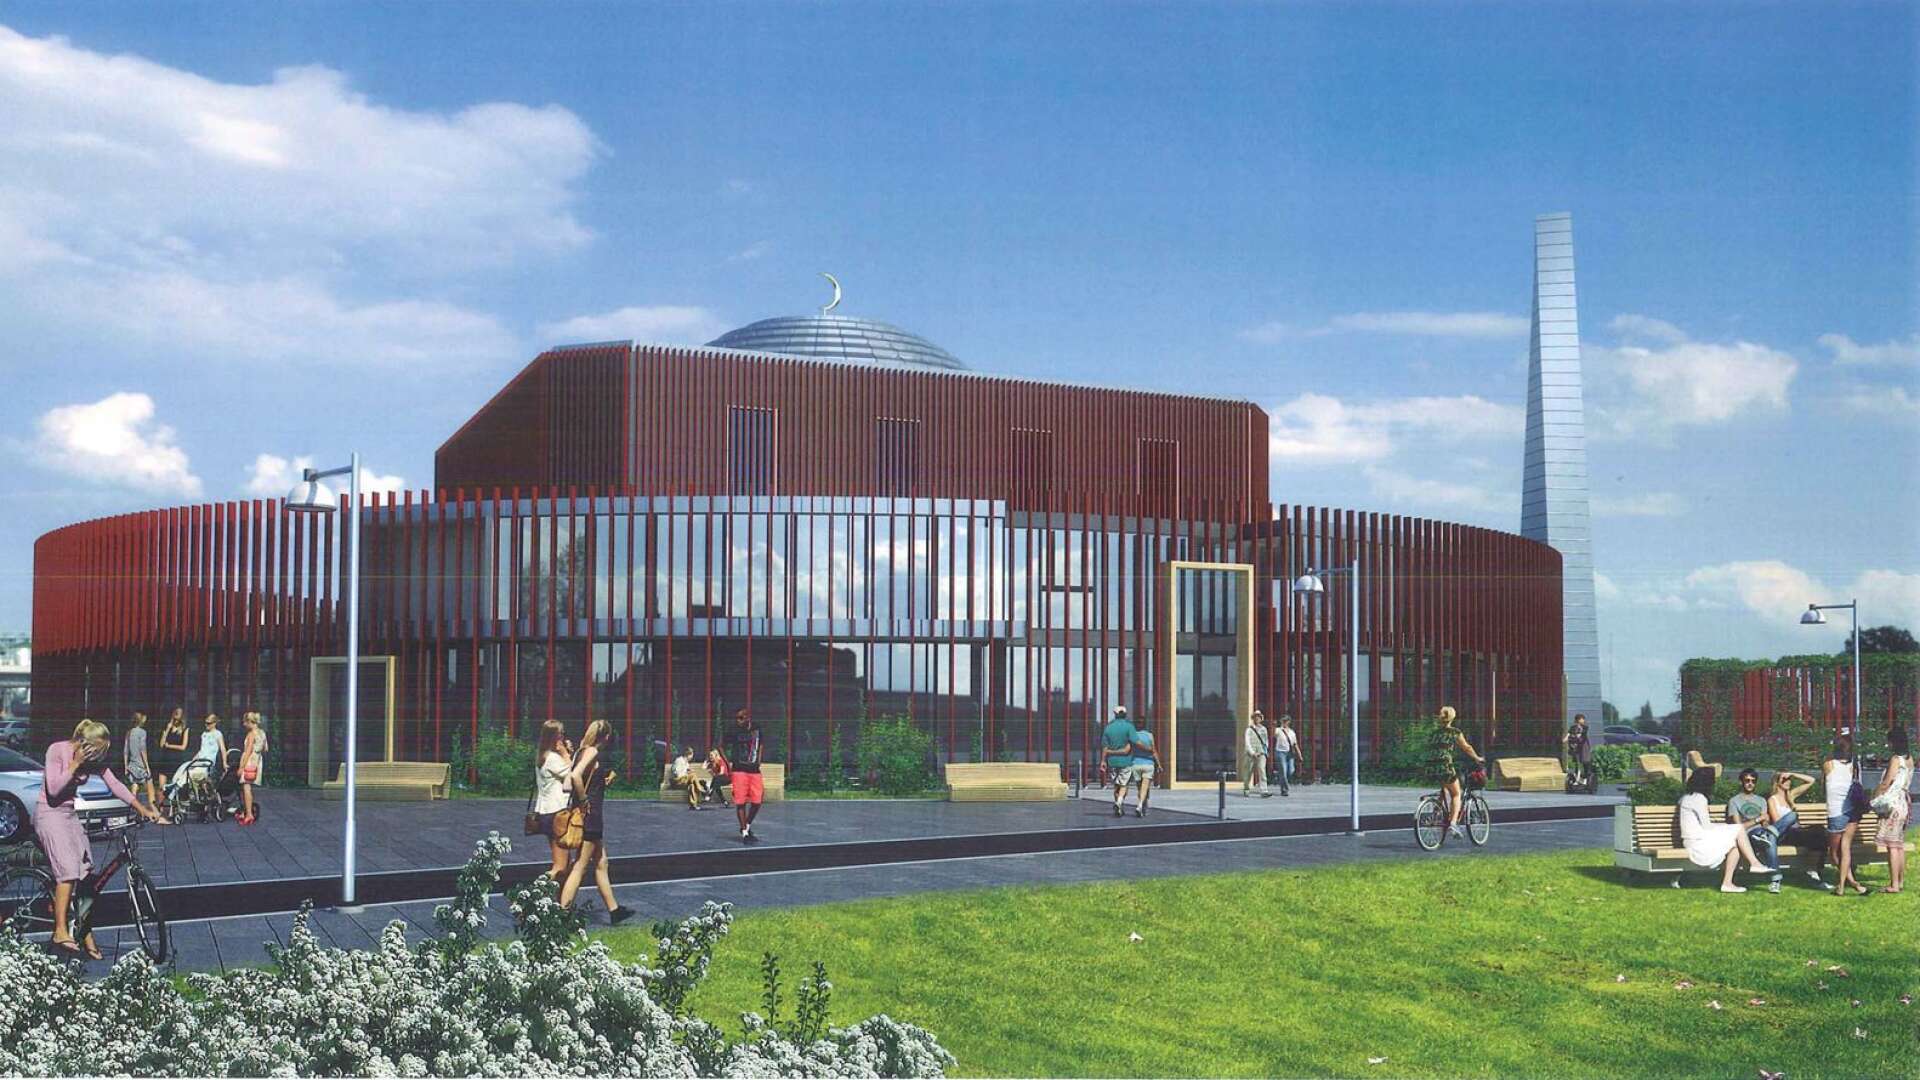 Så här ska den nya moskén se ut enligt planerna. Placeringen är vid den före detta rondellen i närheten av Nobelgymnasiet på Rud i Karlstad.